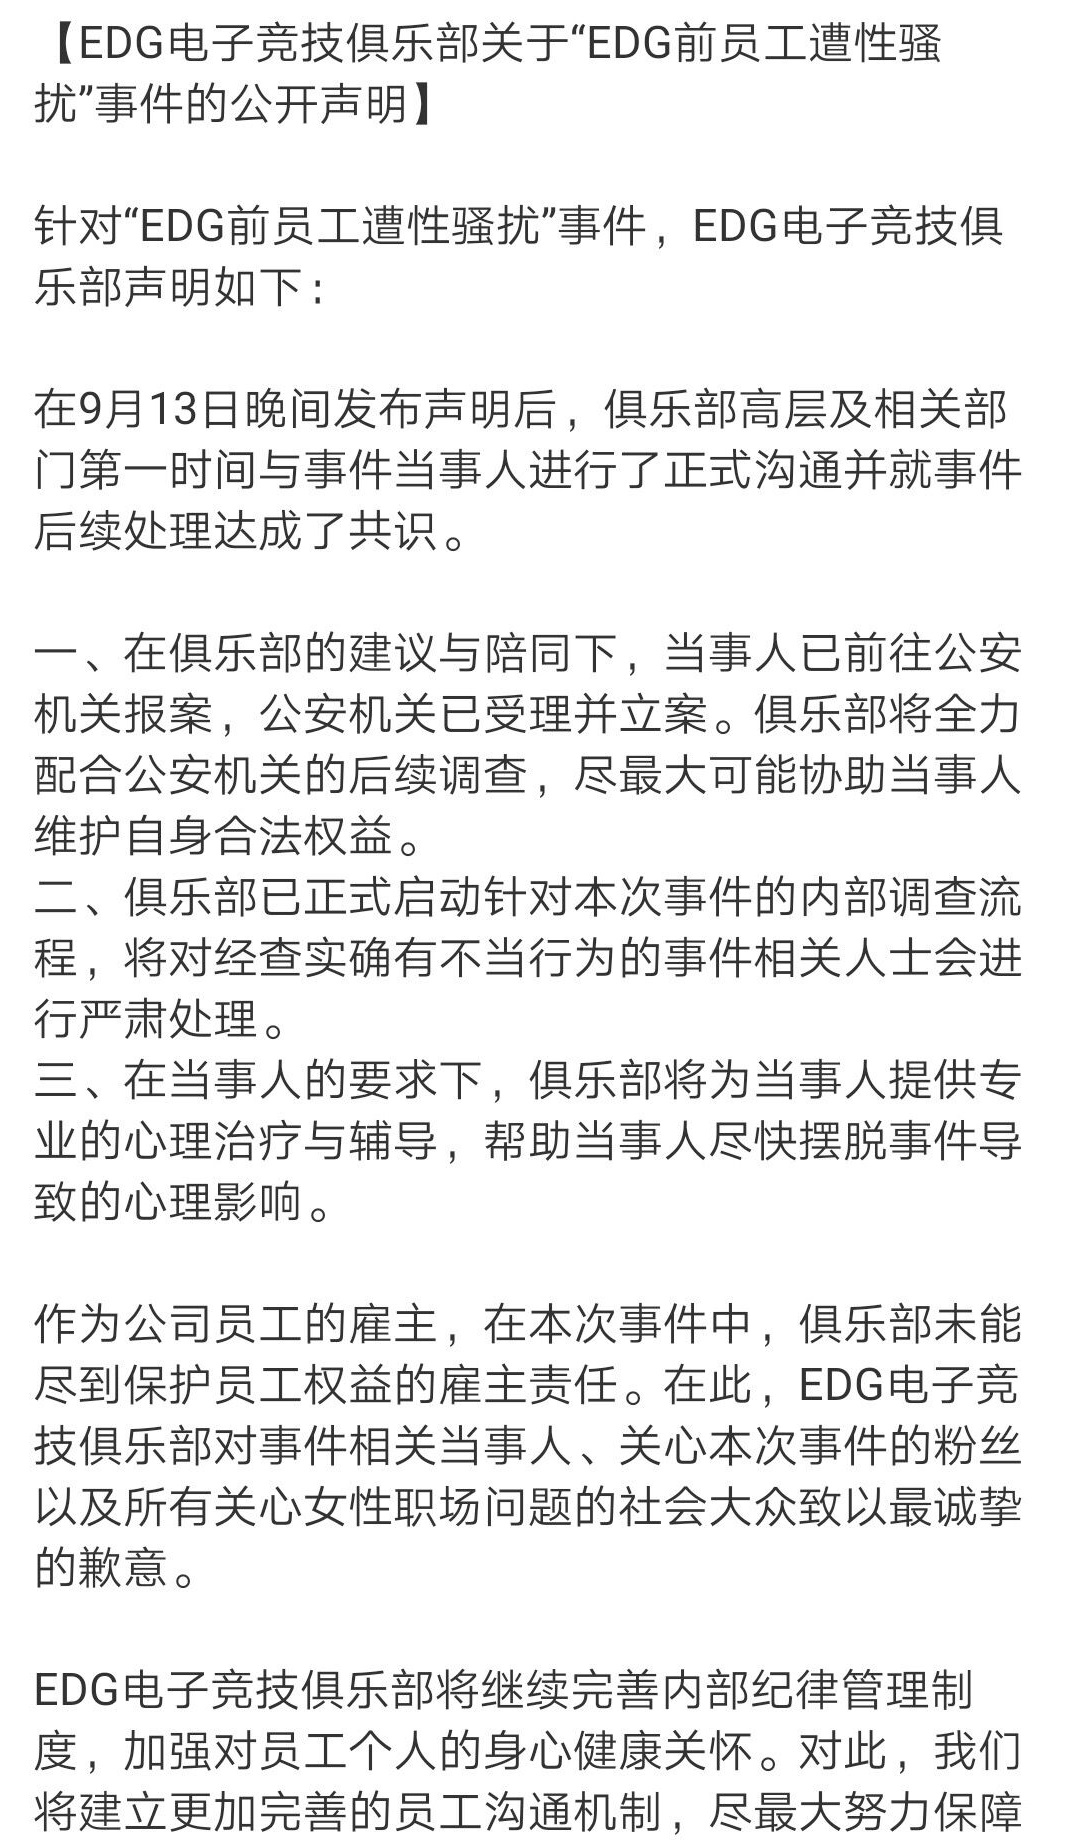 EDG发布道歉声明，向所有社会大众致歉！并且声称要帮助受害者